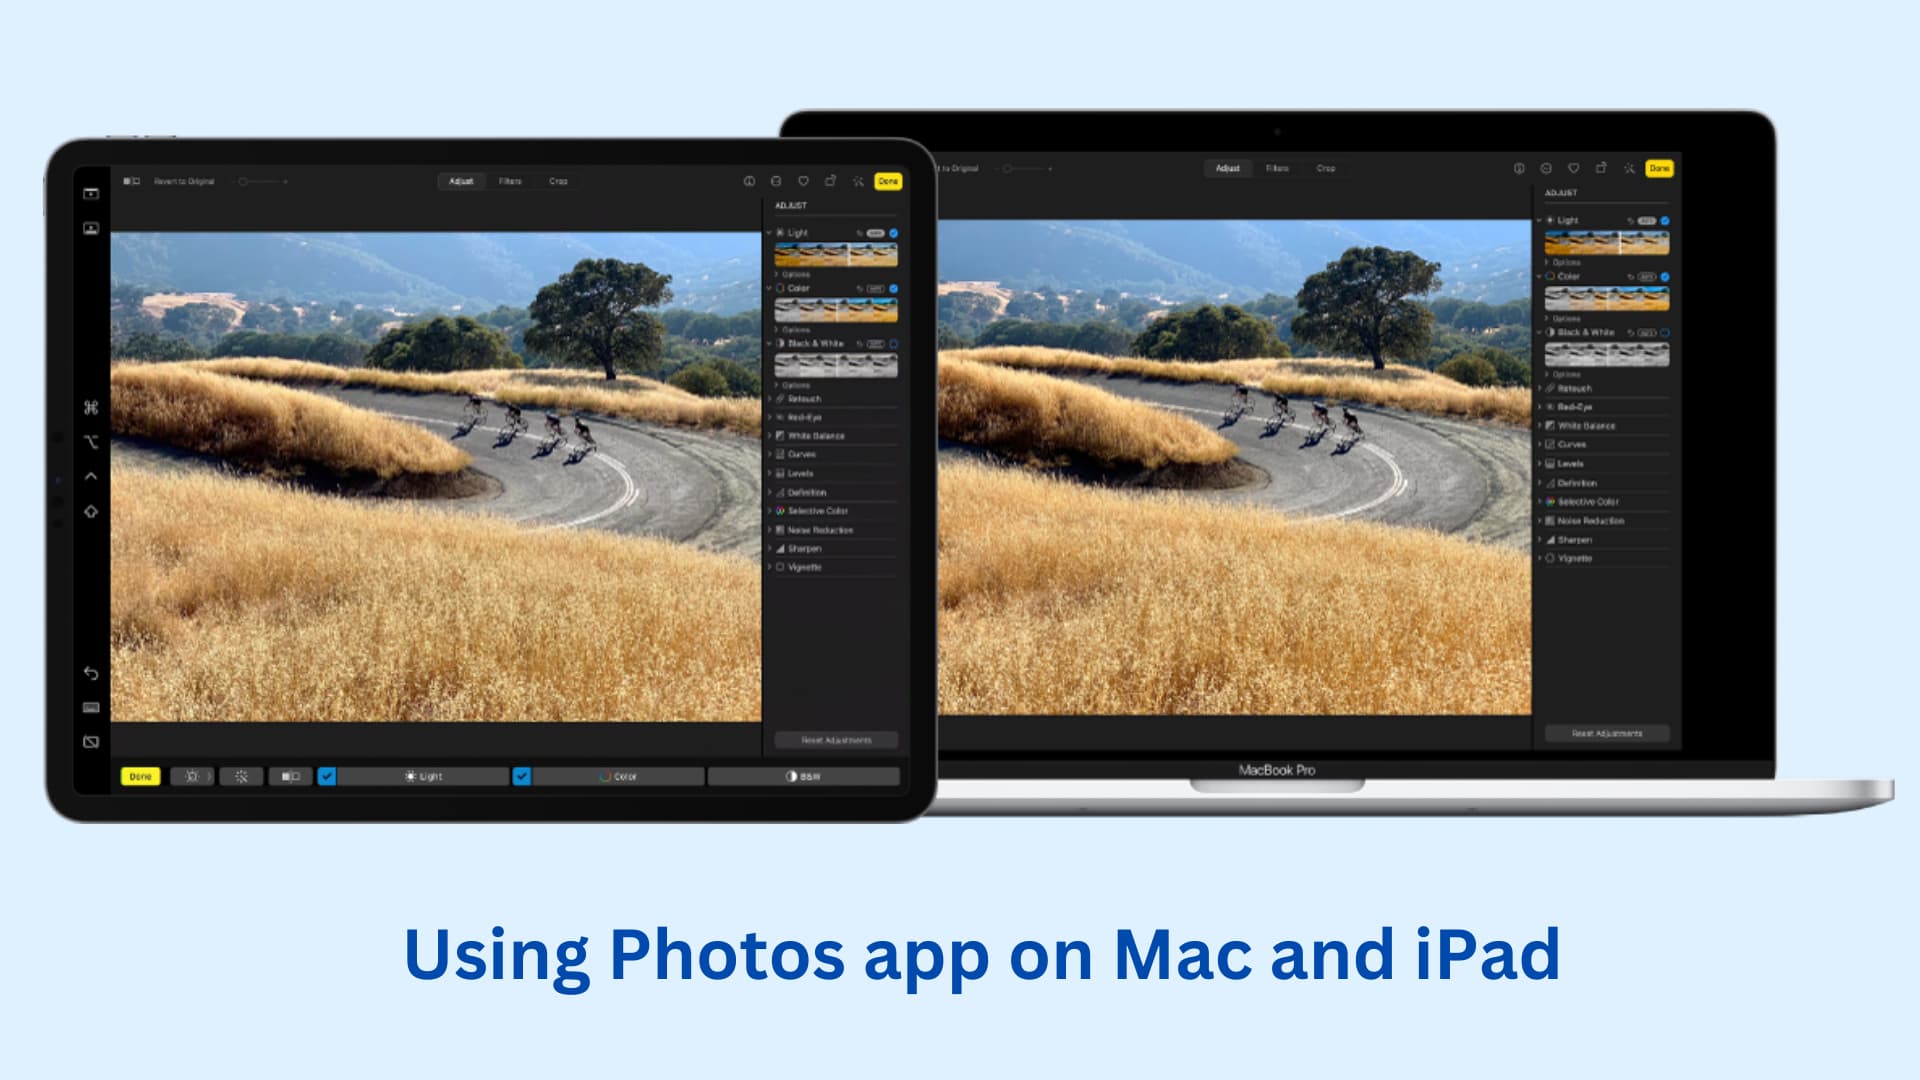 Using same app on Mac and iPad